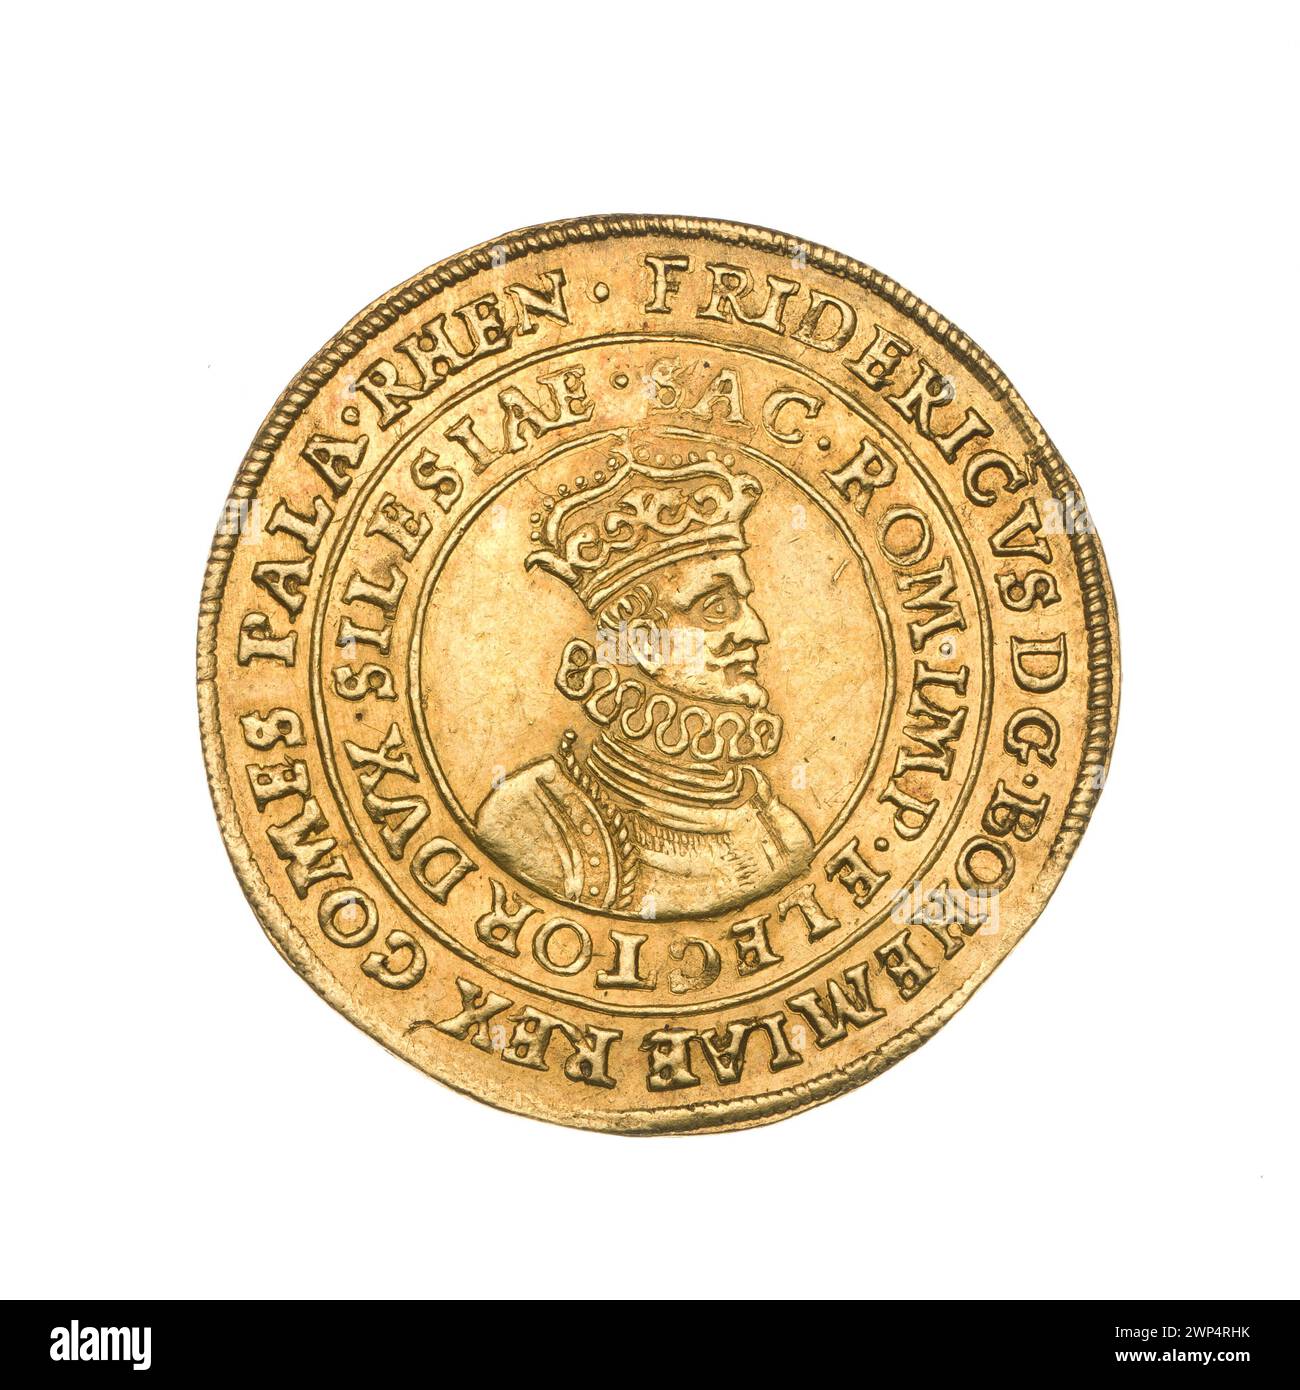 2 Dukaten; Fryderyk V. aus der Pfalz des Rheins (König der Tschechischen Republik; 1619-1621); 1620 (1765-00-1765-00); Fryderyk V (Pfälzischer Rhein, tschechischer König - 1596-1632), Fryderyk V (Pfälzischer Rhein, tschechischer König - 1596-1632) - Ikonographie, R6 (Seltenheit), Wittelsbachowie (Familie), Wrocław (Wappen), Ikonographie (Ikonen), Ikonen (Stadtwappen). monety miejskie, popiersia, popiersia męskie, popiersia męskie W kryzie, popiersia męskie W zbroi, portrety, portrety męskie W prawo, portrety władców, tarcza czteropolowa z polem sercowym, Tarcze, Tarcze herbowe Stockfoto